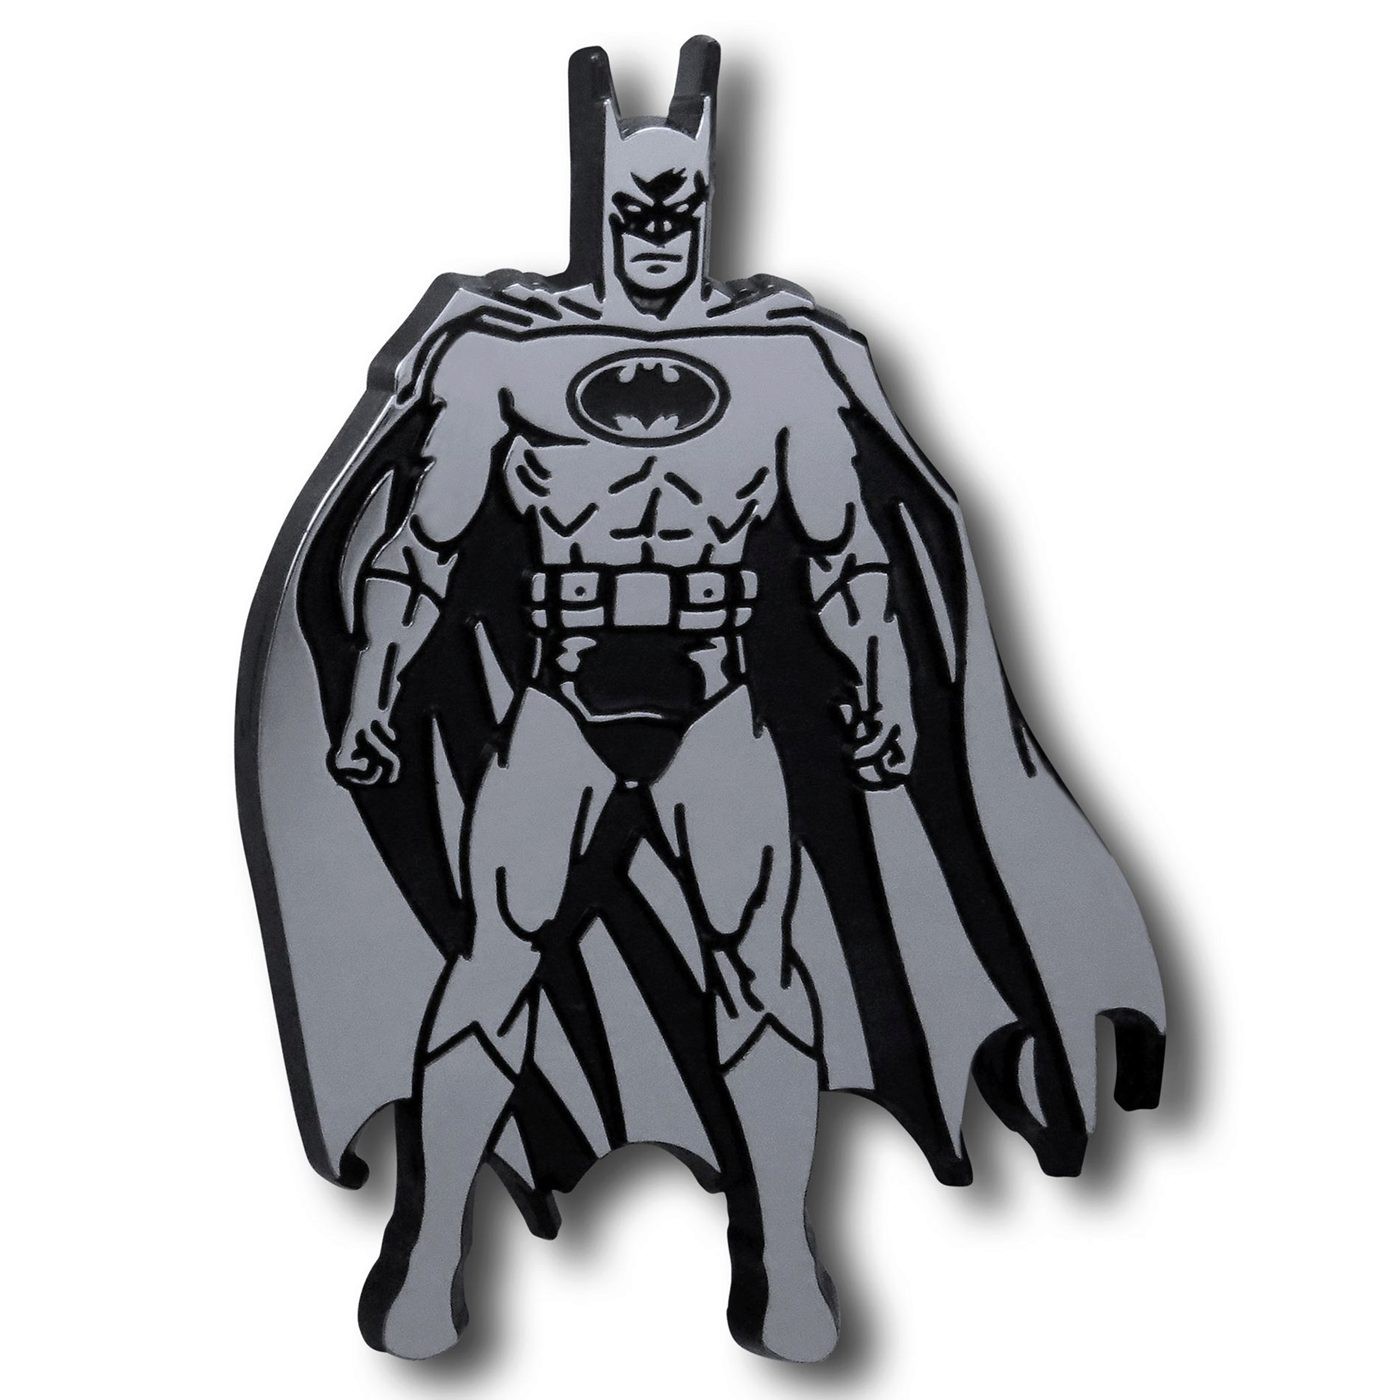 Batman Pose 3D Plastic Car Emblem